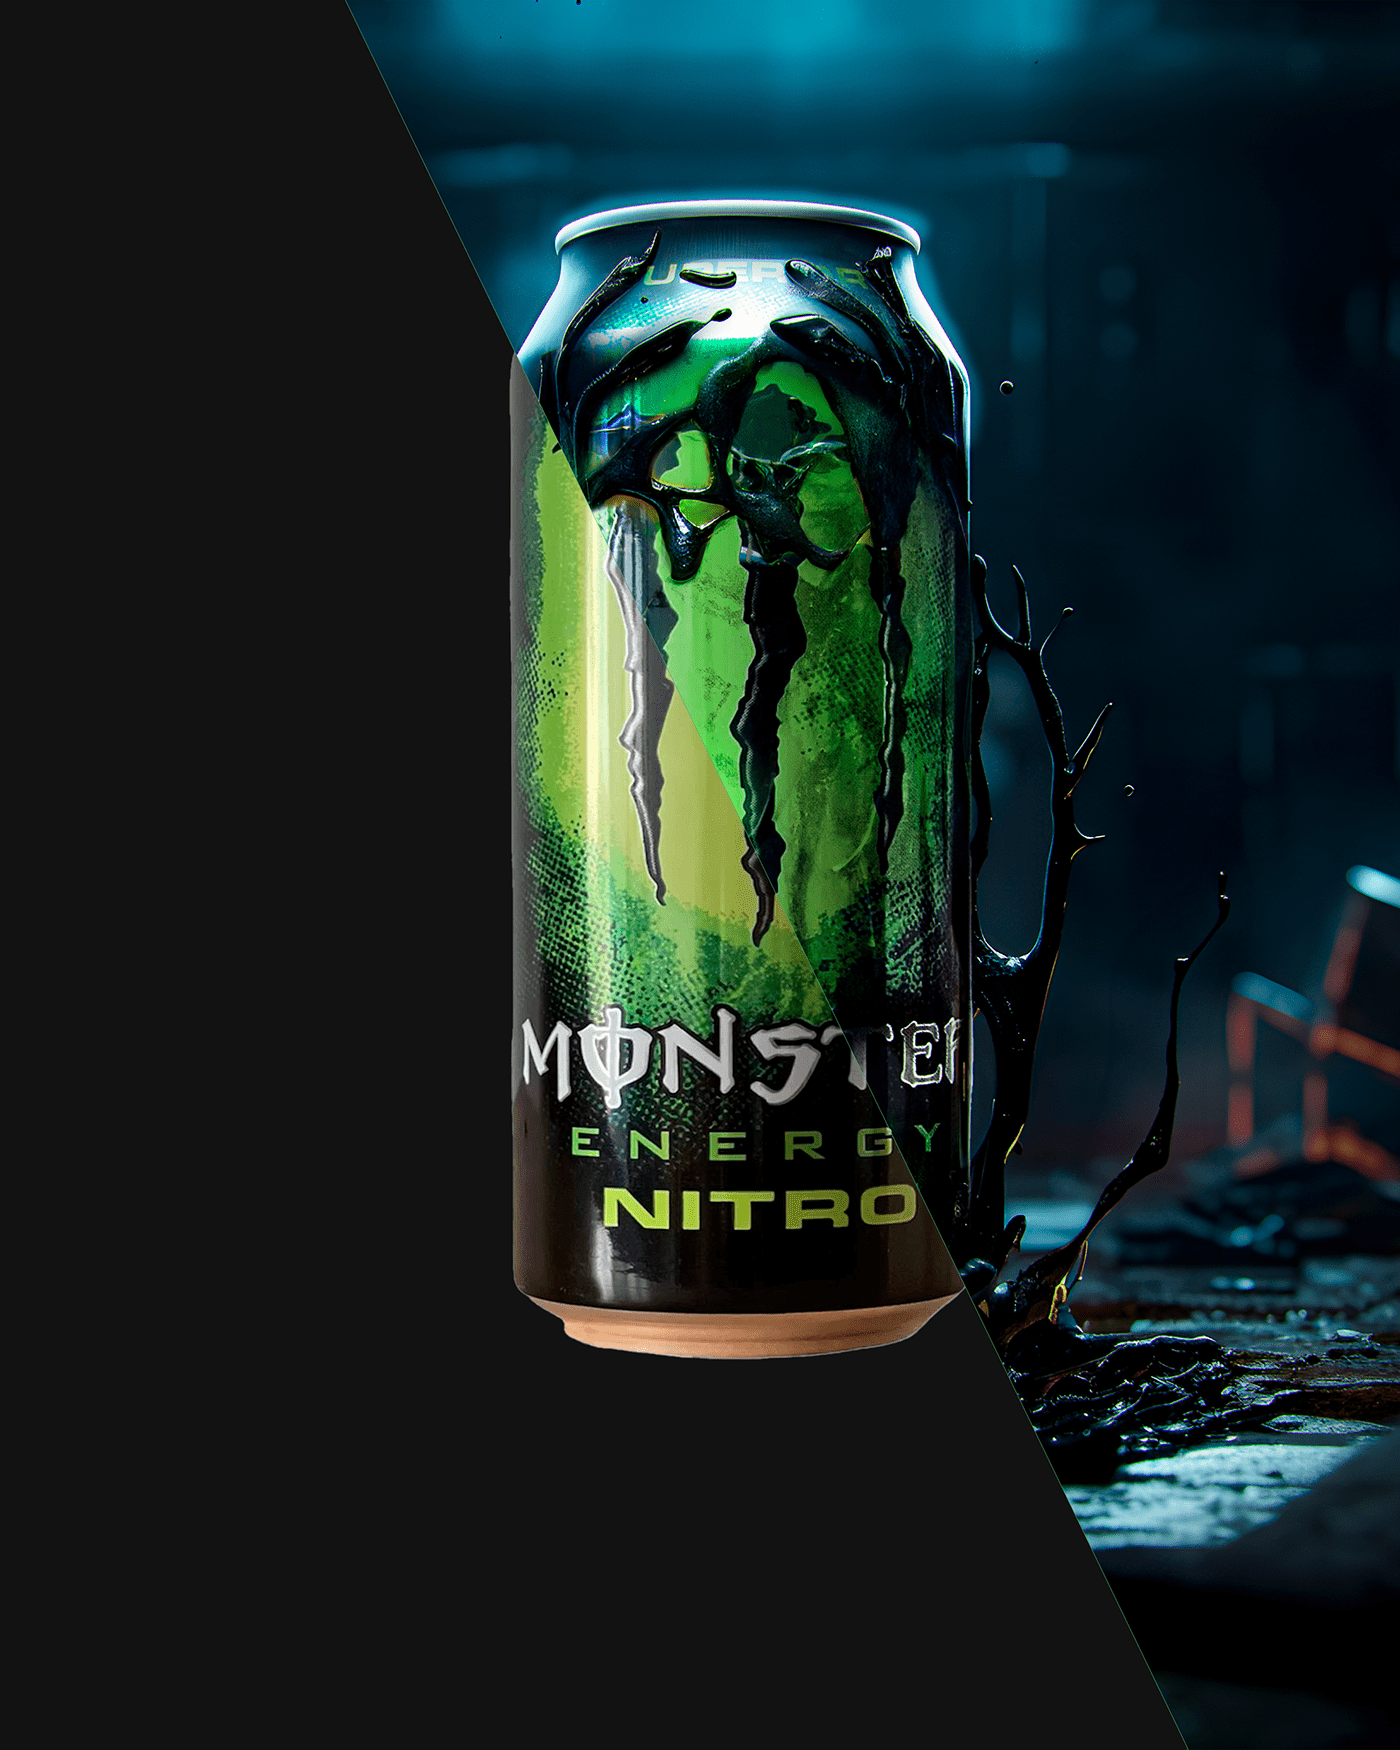 monster energy drink bottle product brand identity Social media post Socialmedia